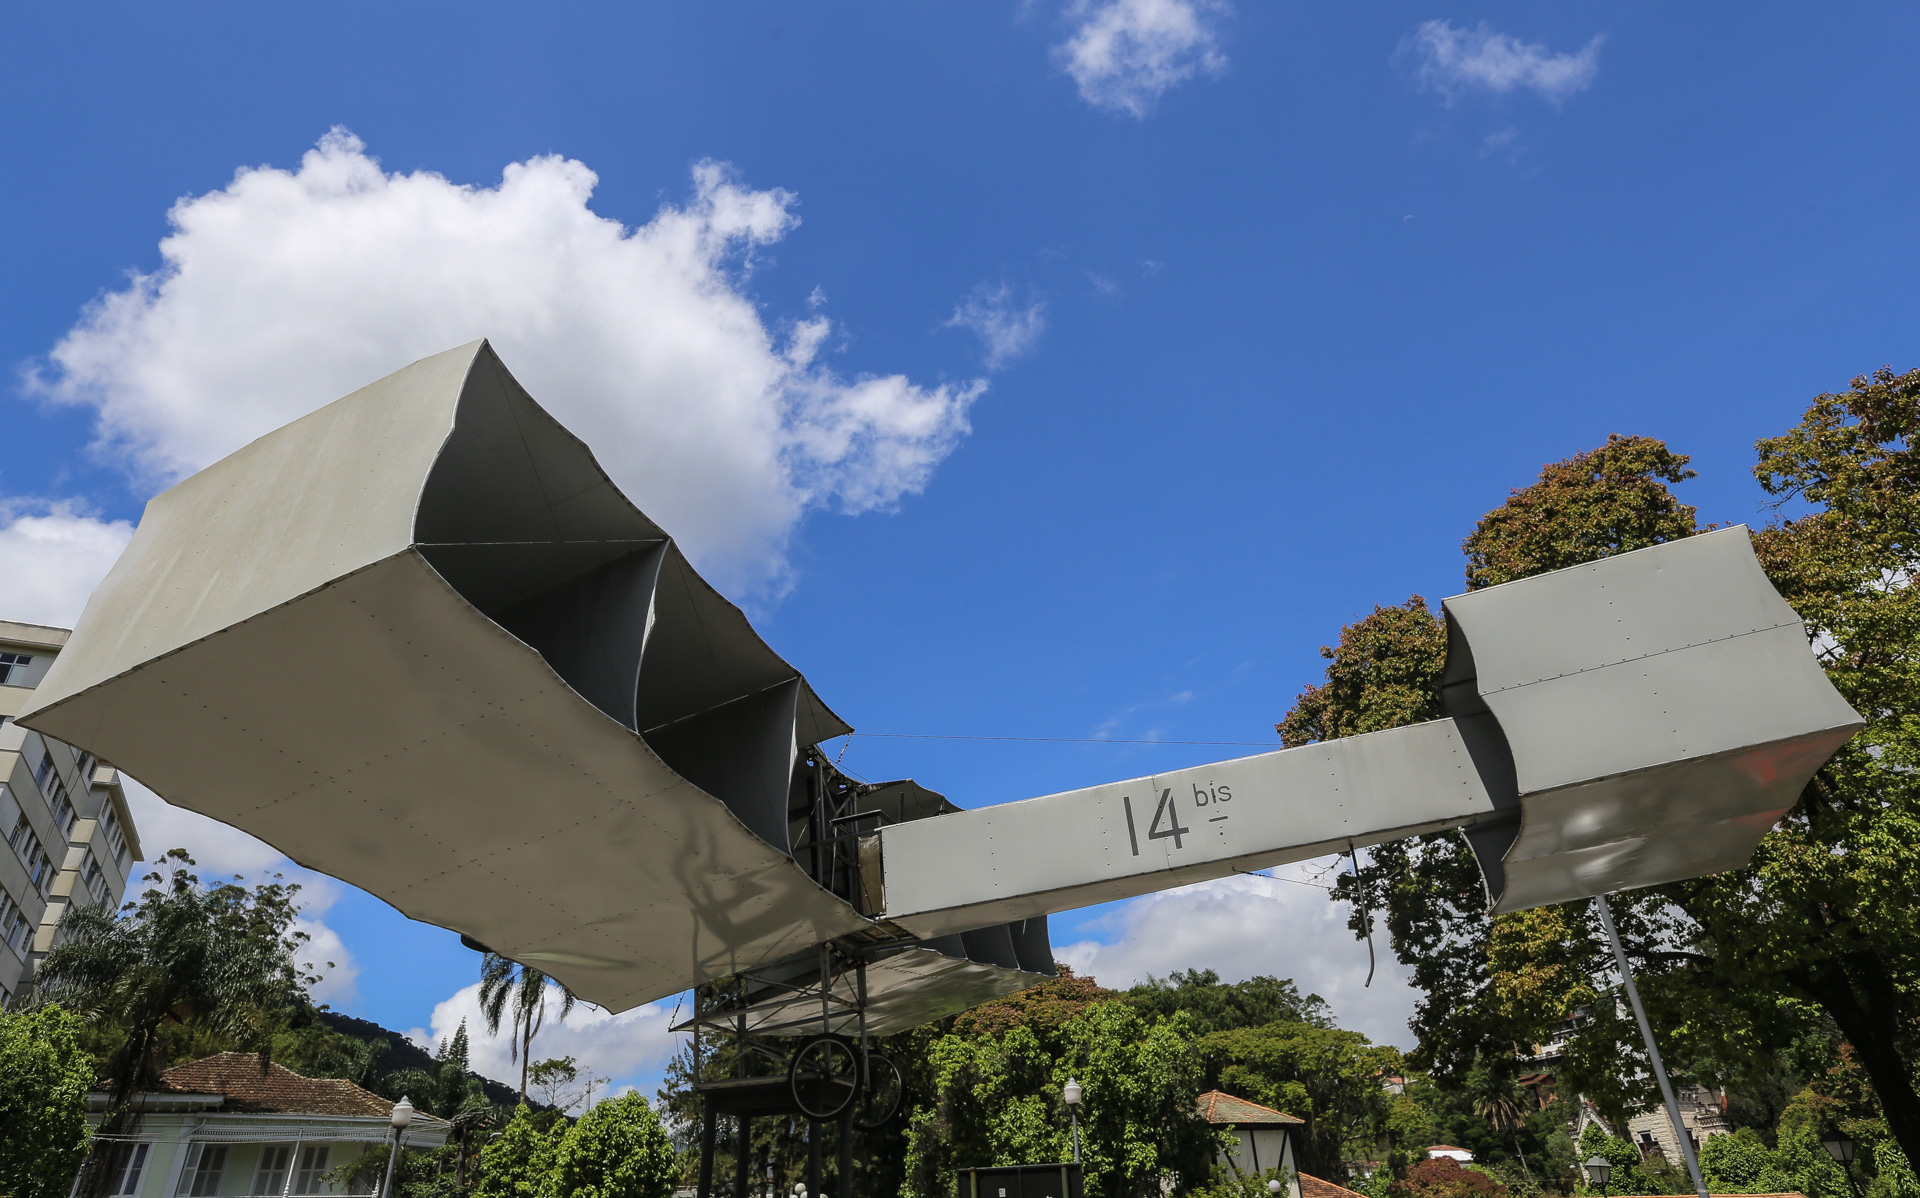 Réplique du « 14bis » le premier engin volant qui décolla, vola 60 mètres et atterri sans casse, œuvre de Santos Dumont